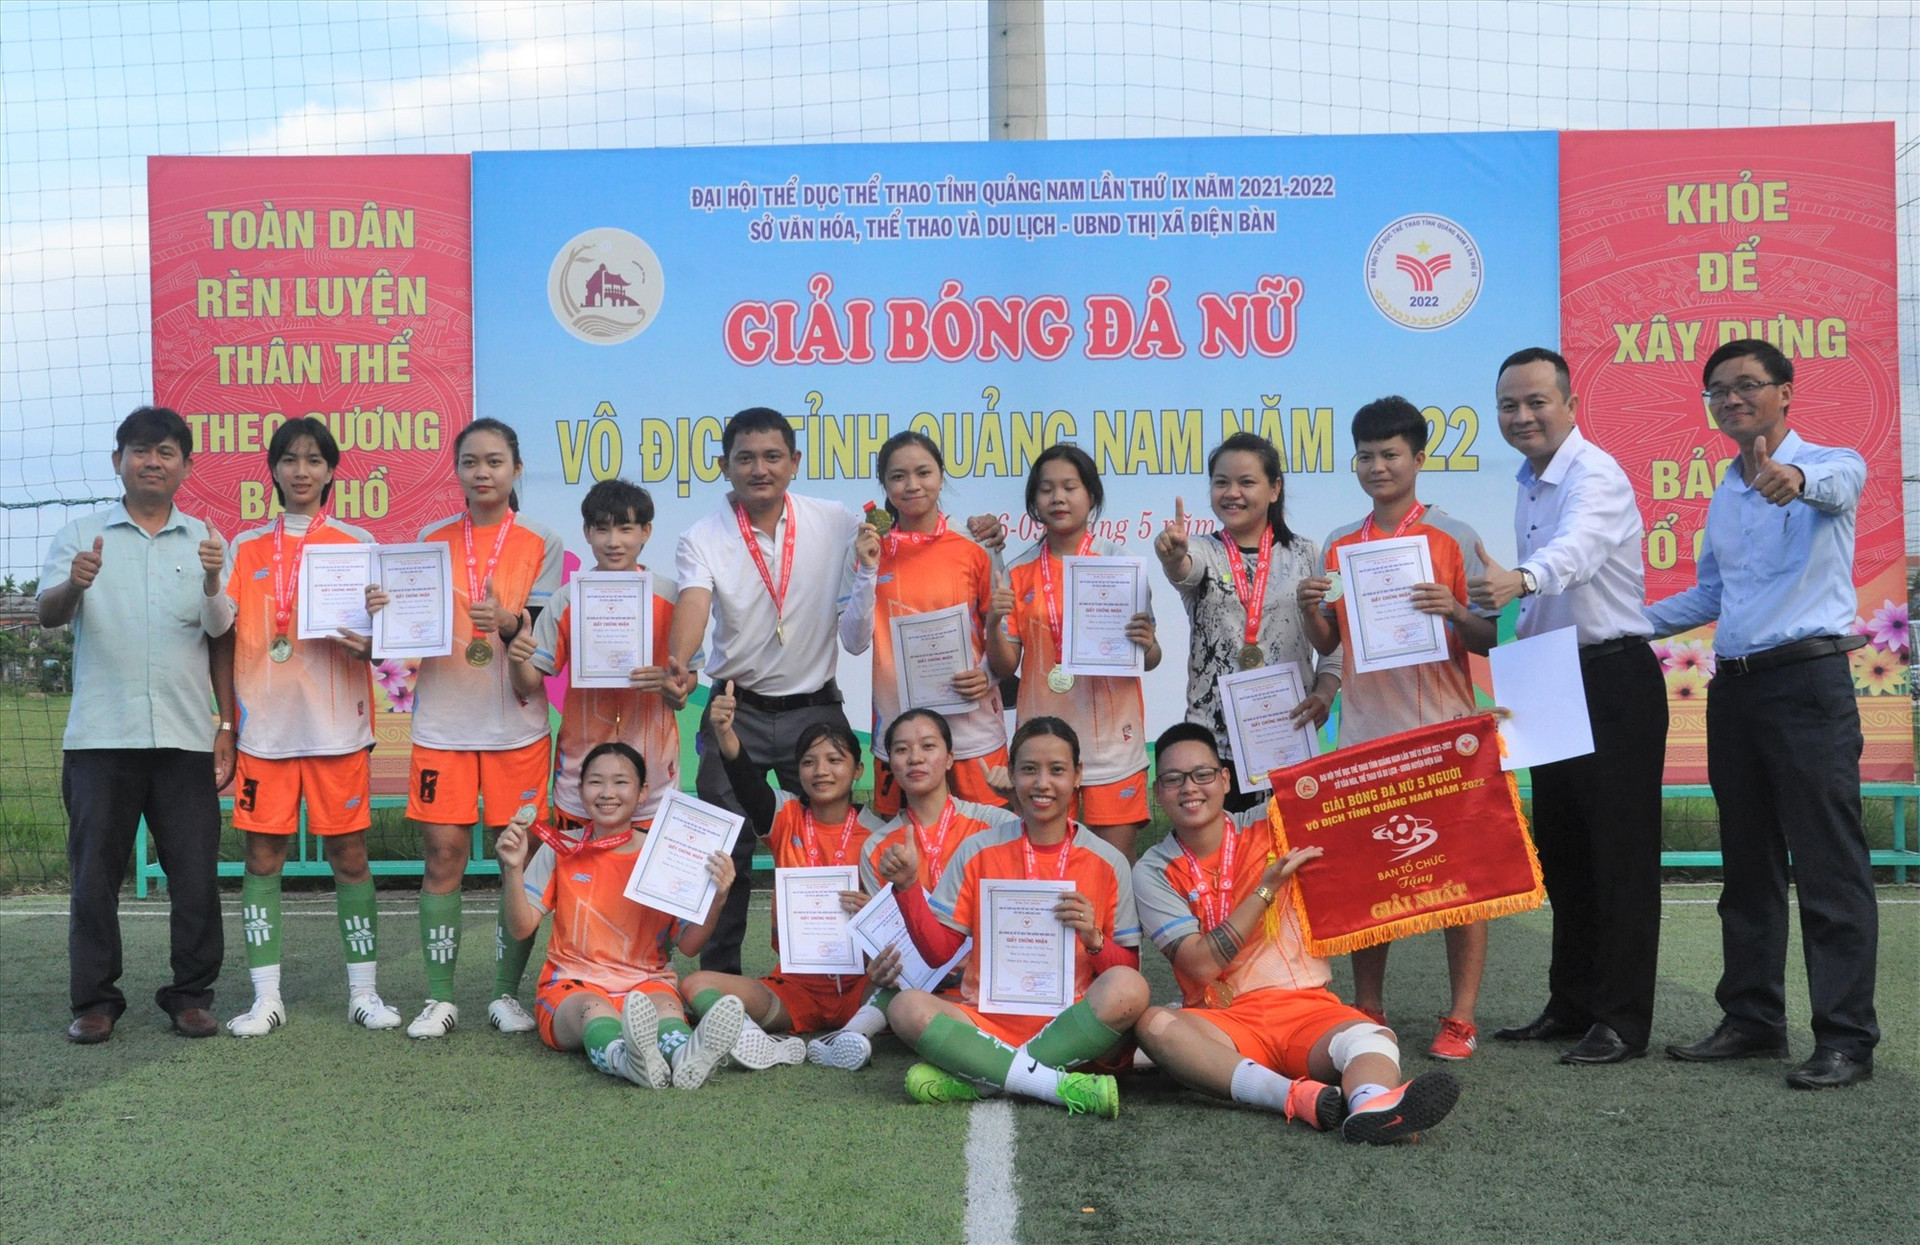 Niềm vui đoạt chức vô địch môn bóng đá nữ của đoàn Núi Thành.